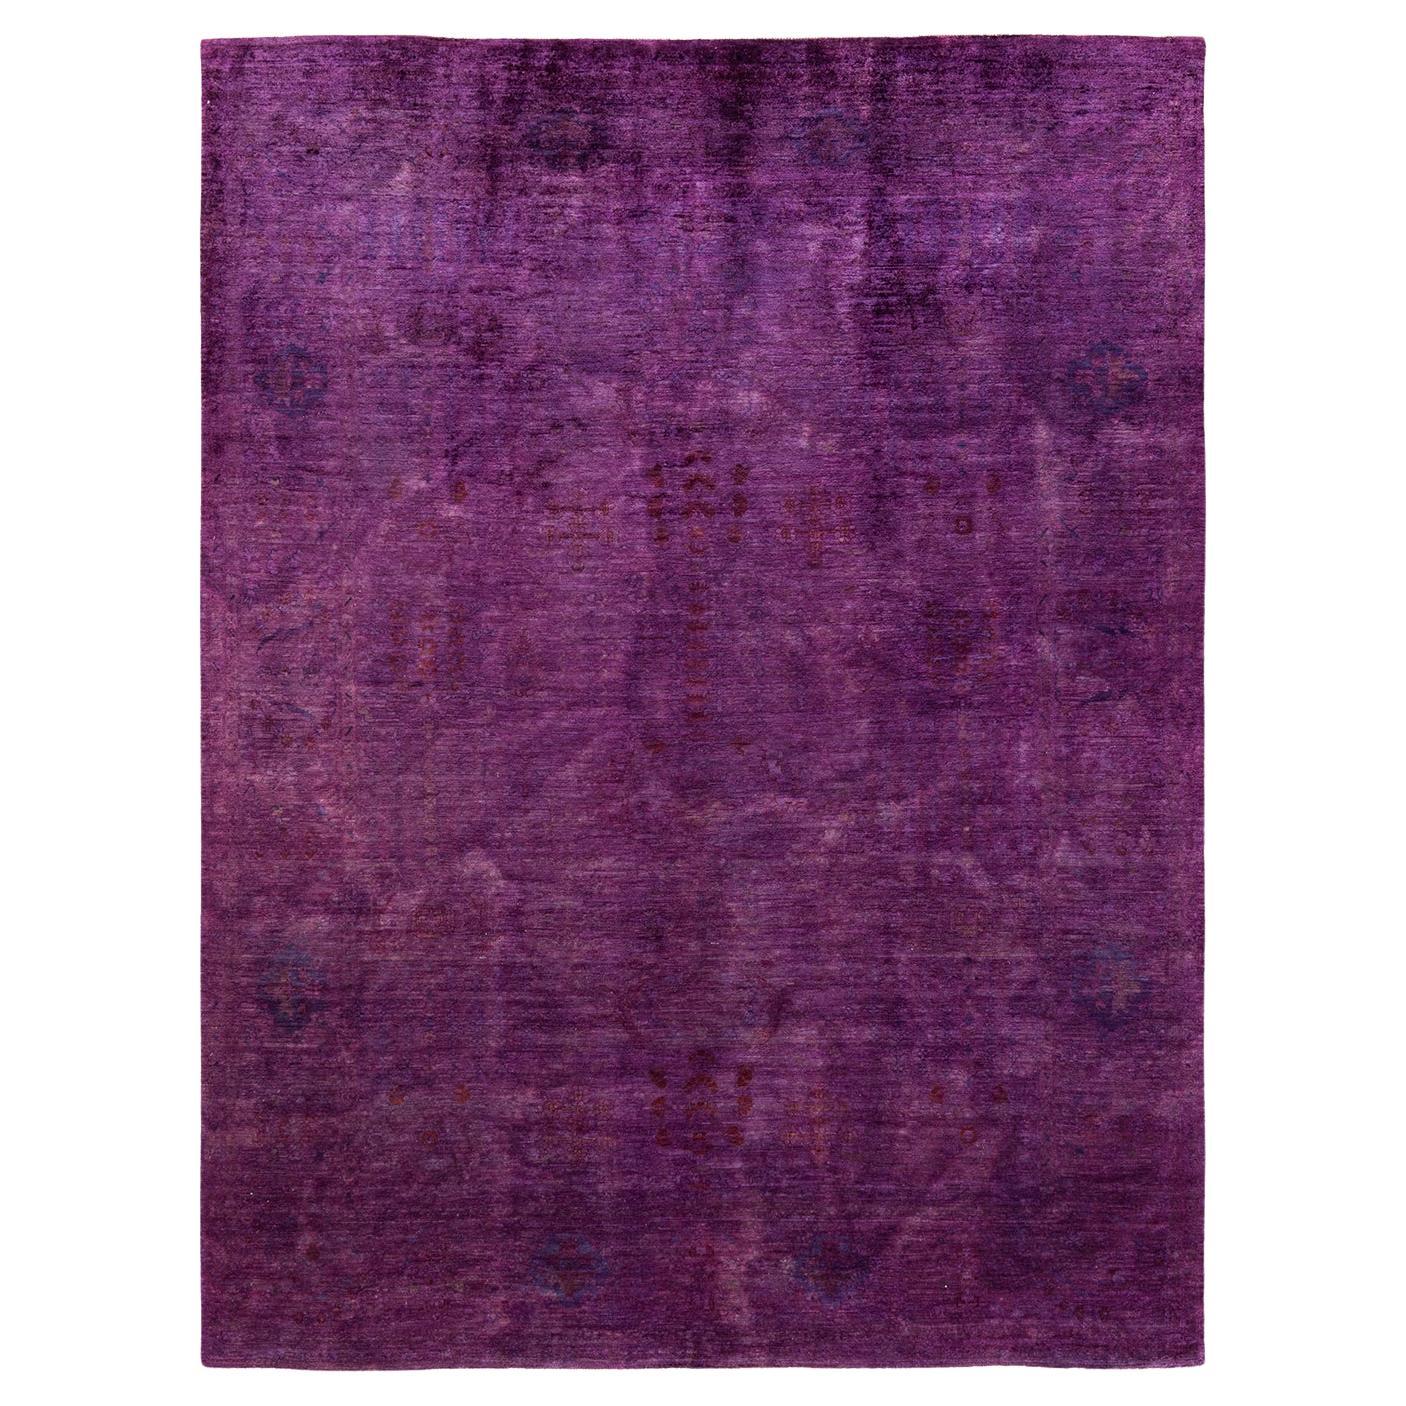 Tappeto per l'area Vibrance Purple, unico nel suo genere, annodato a mano e sovratinto